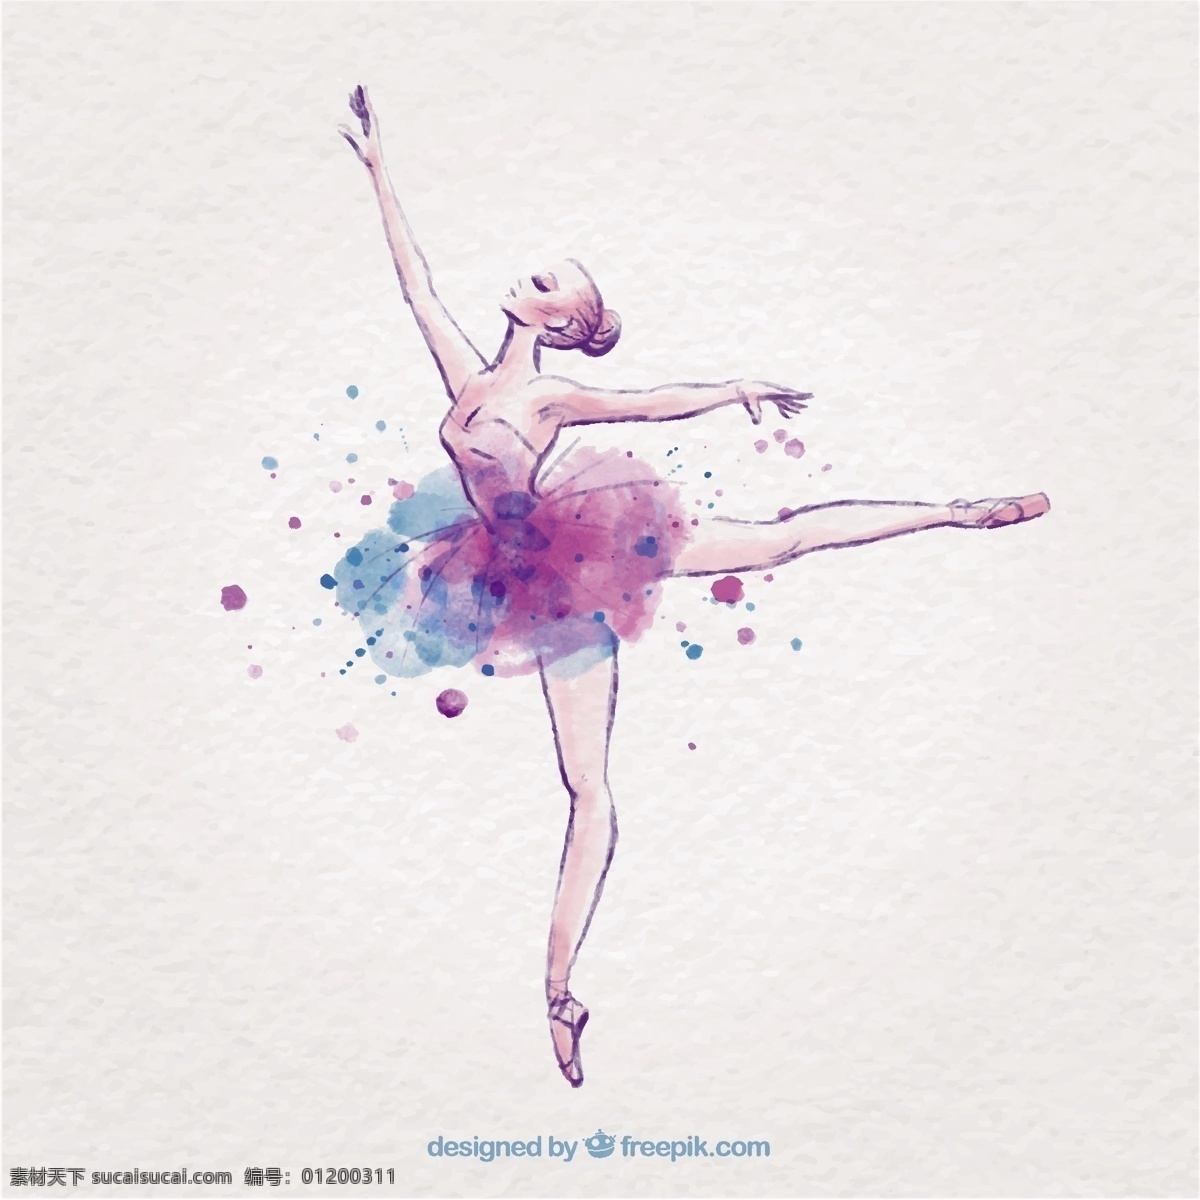 泼墨 芭蕾舞 女演员 水彩 手 手绘 飞溅 舞蹈 艺术 紫色 墨水 绘画 艺术家 舞蹈家 芭蕾舞演员 移动 运动 粗略